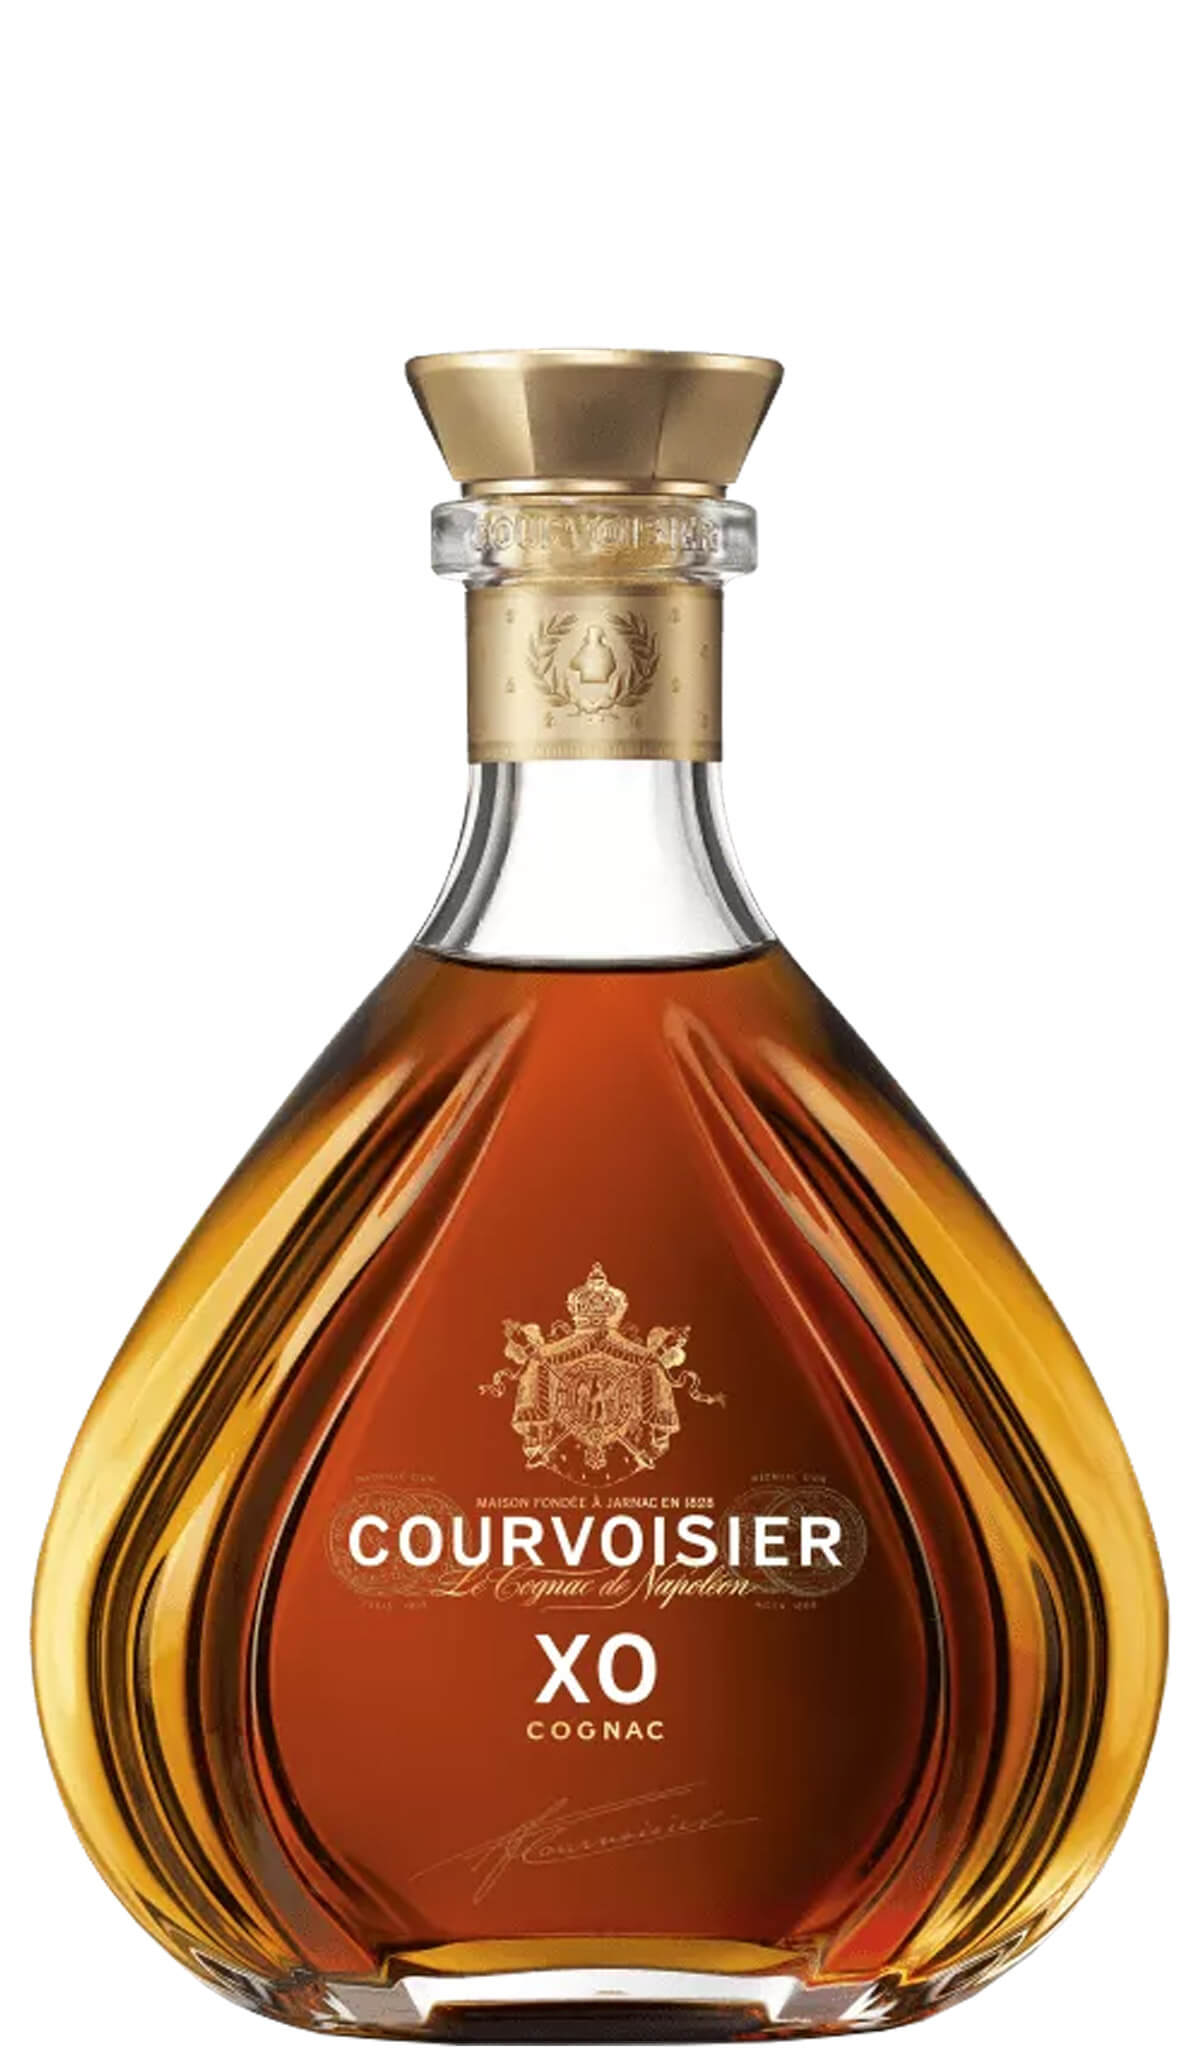 Courvoisier cognac. Коньяк Курвуазье Хо. Courvoisier XO Cognac. Коньяк Курвуазье x o. Courvoisier XO Extra old Cognac.